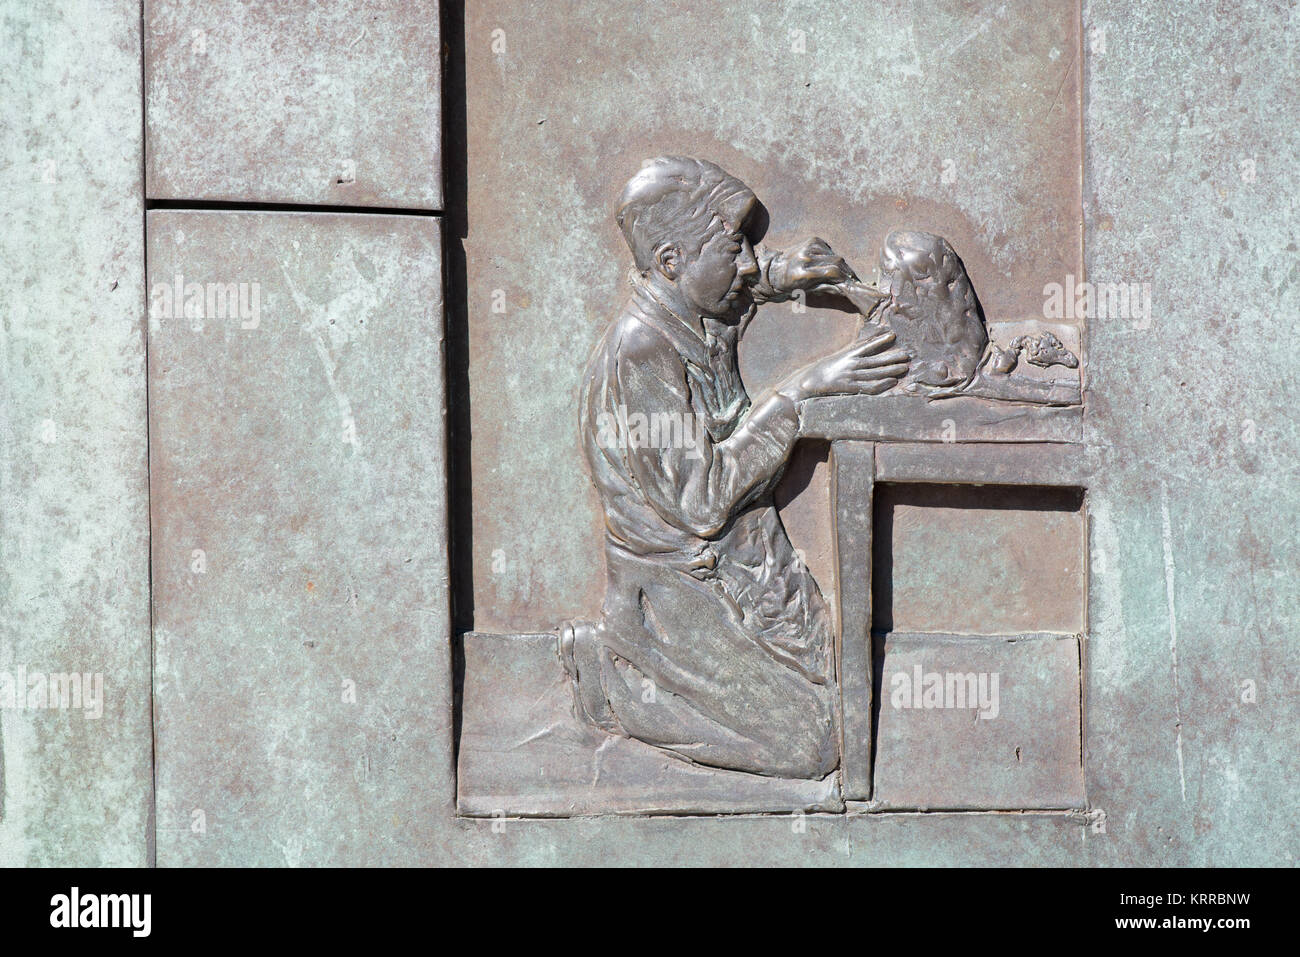 WASHINGTON DC, États-Unis — Un mur de représentations tactiles et accessibles de la vie durant la Grande Dépression, au FDR Memorial. Situé à côté du bassin de Tidal à Washington DC, le FDR Memorial est dédié au Président Franklin D. Roosevelt (président de 1933 à 1945). Le Franklin Delano Roosevelt Memorial est un monument tentaculaire de plus de 7,5 hectares dans le West Potomac Park de la capitale. Le mémorial, consacré en 1997, rend hommage au Président des États-Unis de 32nd, FDR, et à son influence durable sur l'histoire américaine. Banque D'Images